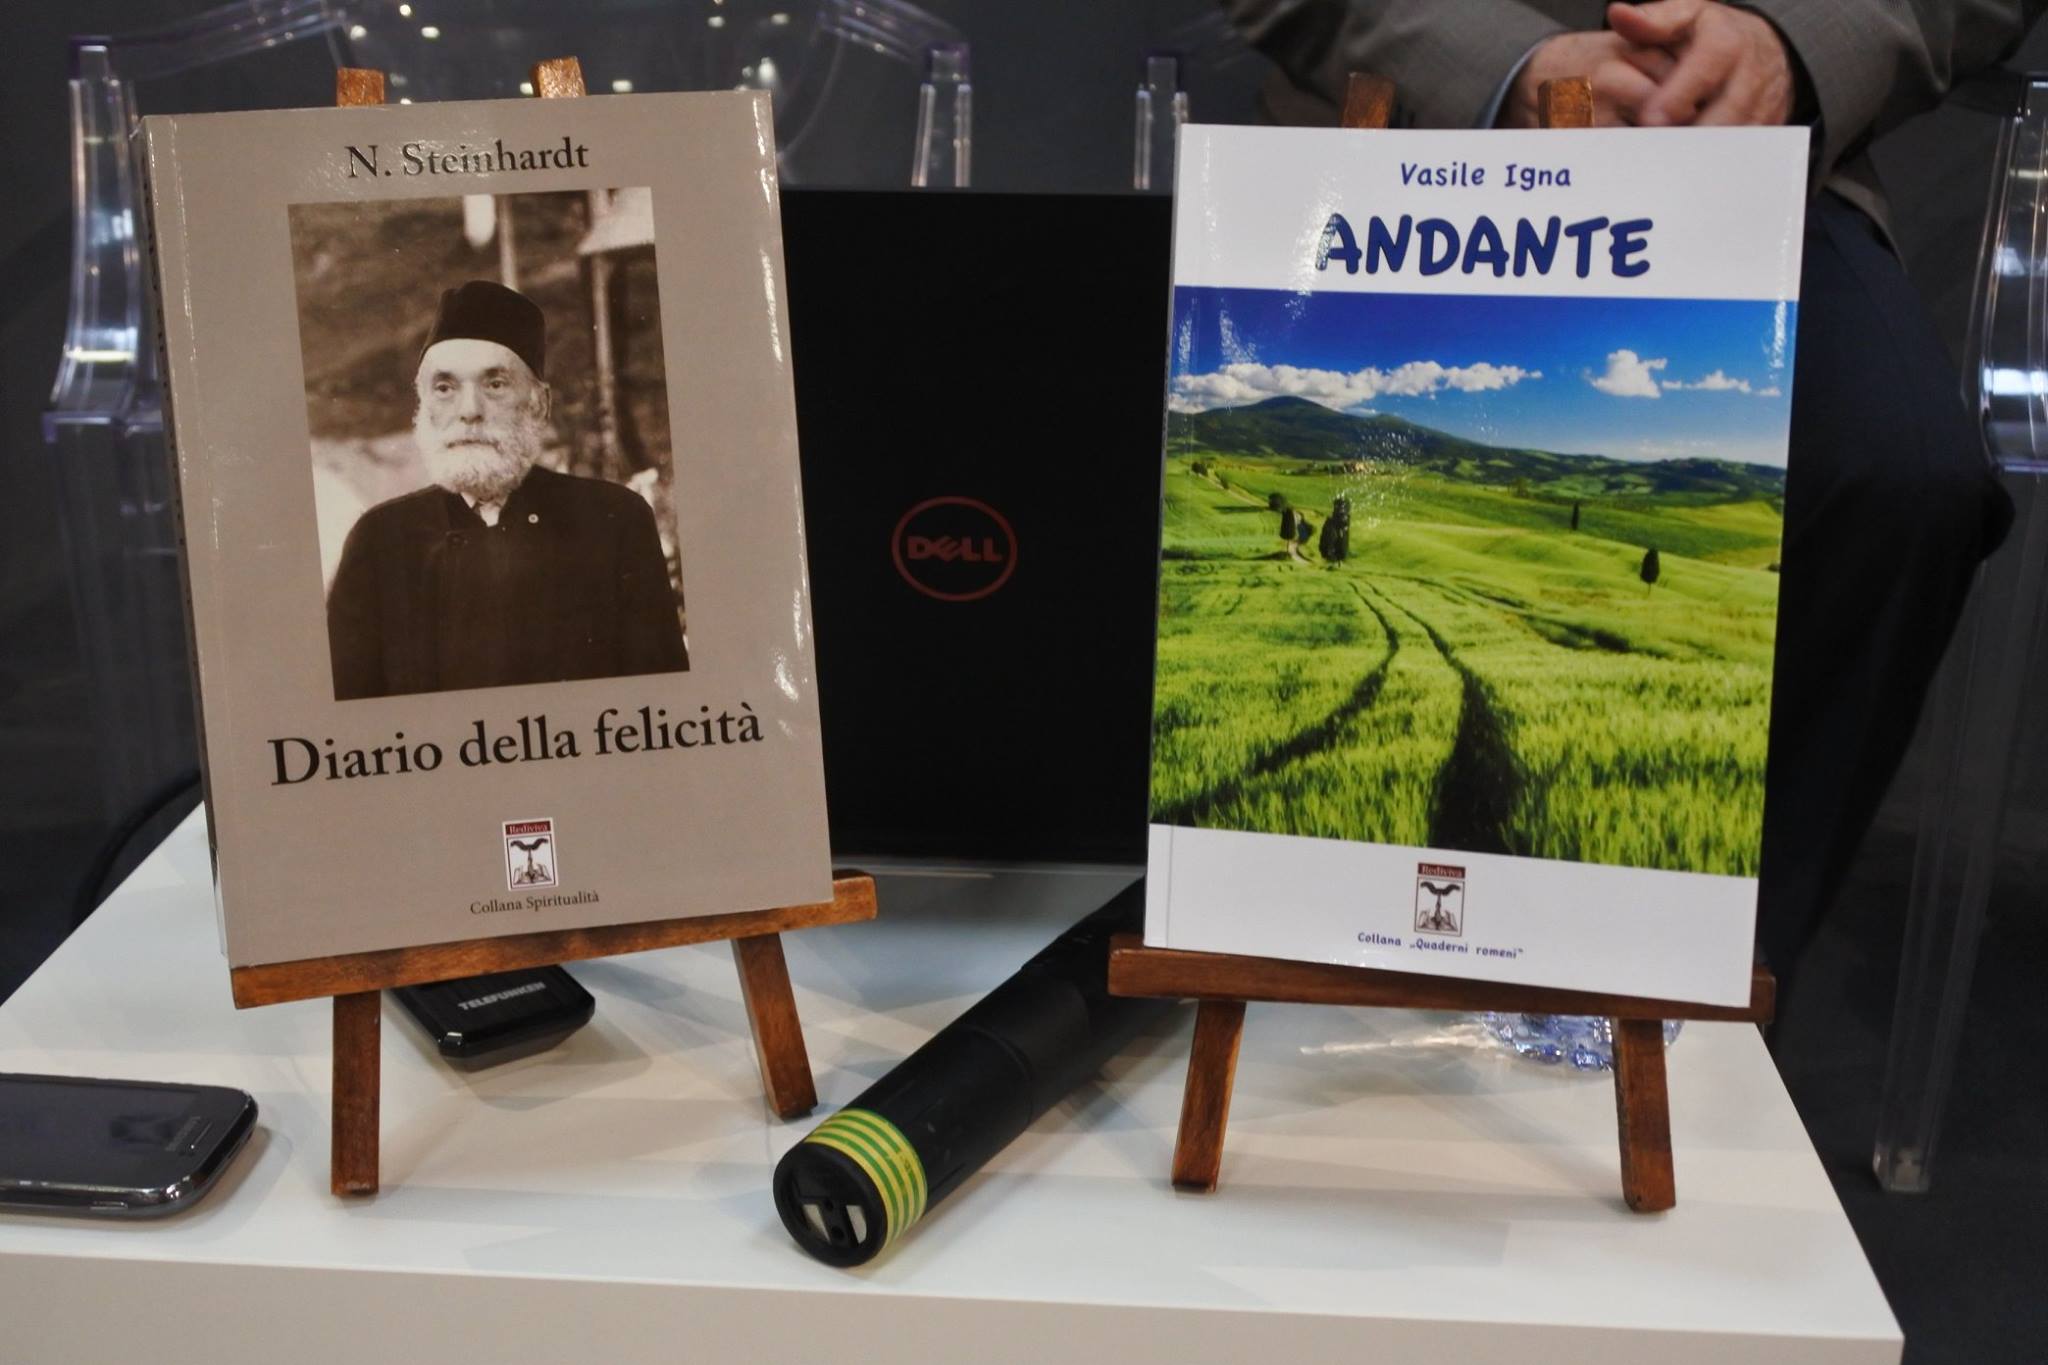 Rediviva din Milano prezentă la Salonul International de carte de la Torino cu volumele in italiană: “Jurnalul fericiri”de N. Steinhardt și “Andante”de Vasile Igna